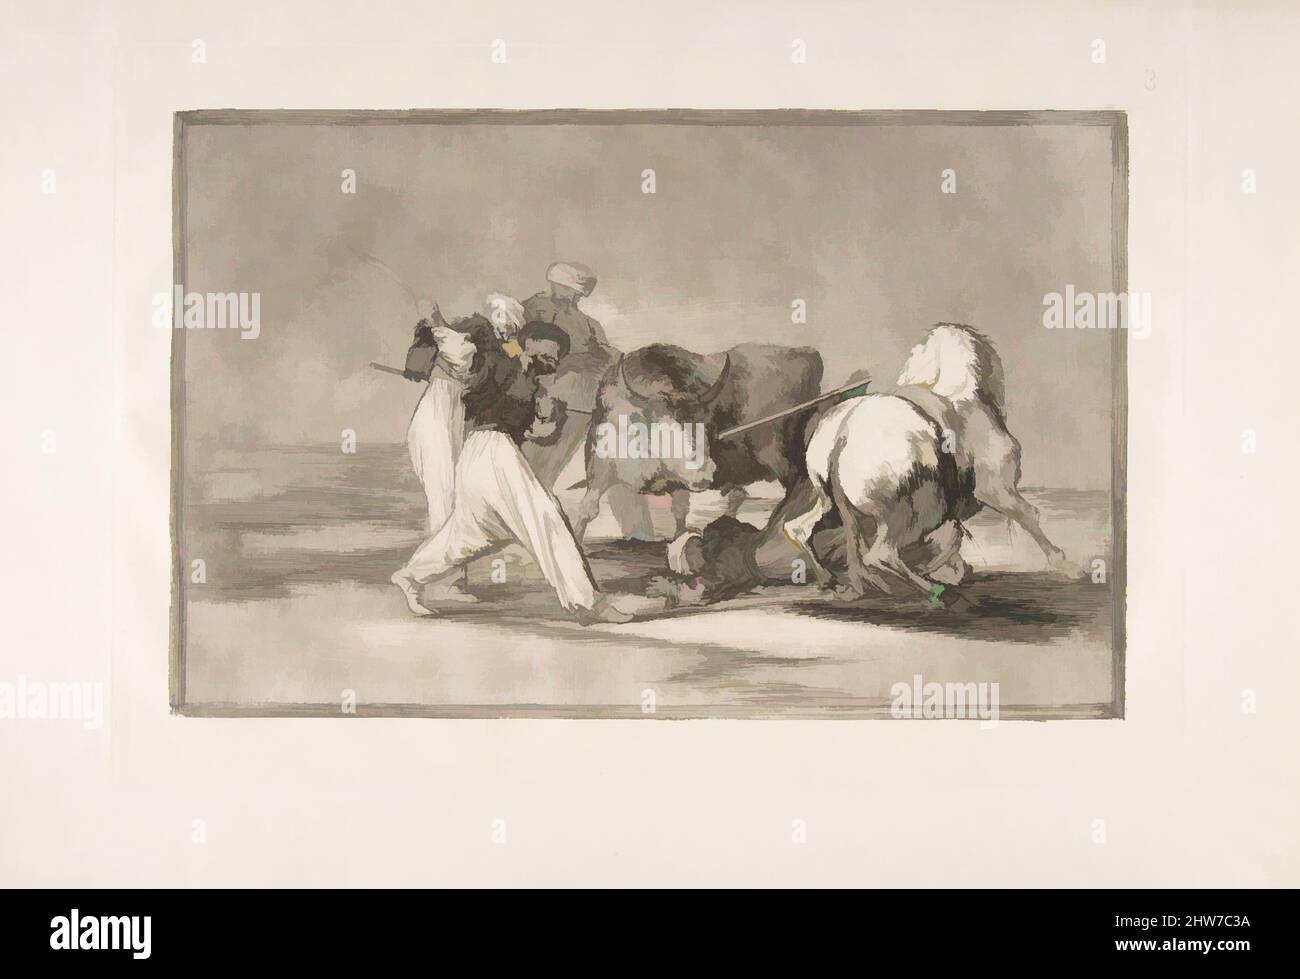 Art inspiré par la planche 3 de la 'Tauromaquia': Les Maures installés en Espagne, en abandon des superstitions du Coran, adopté cet art de la chasse, et de saisir un taureau dans l'ouverture, 1816, Etching, craché aquatint, sec point et burin, Plaque : 9 5/8 x 13 3/4 po. (24,5 x 35 cm), impressions, Goya (, oeuvres classiques modernisées par Artotop avec une touche de modernité. Formes, couleur et valeur, impact visuel accrocheur sur l'art émotions par la liberté d'œuvres d'art d'une manière contemporaine. Un message intemporel qui cherche une nouvelle direction créative. Artistes qui se tournent vers le support numérique et créent le NFT Artotop Banque D'Images